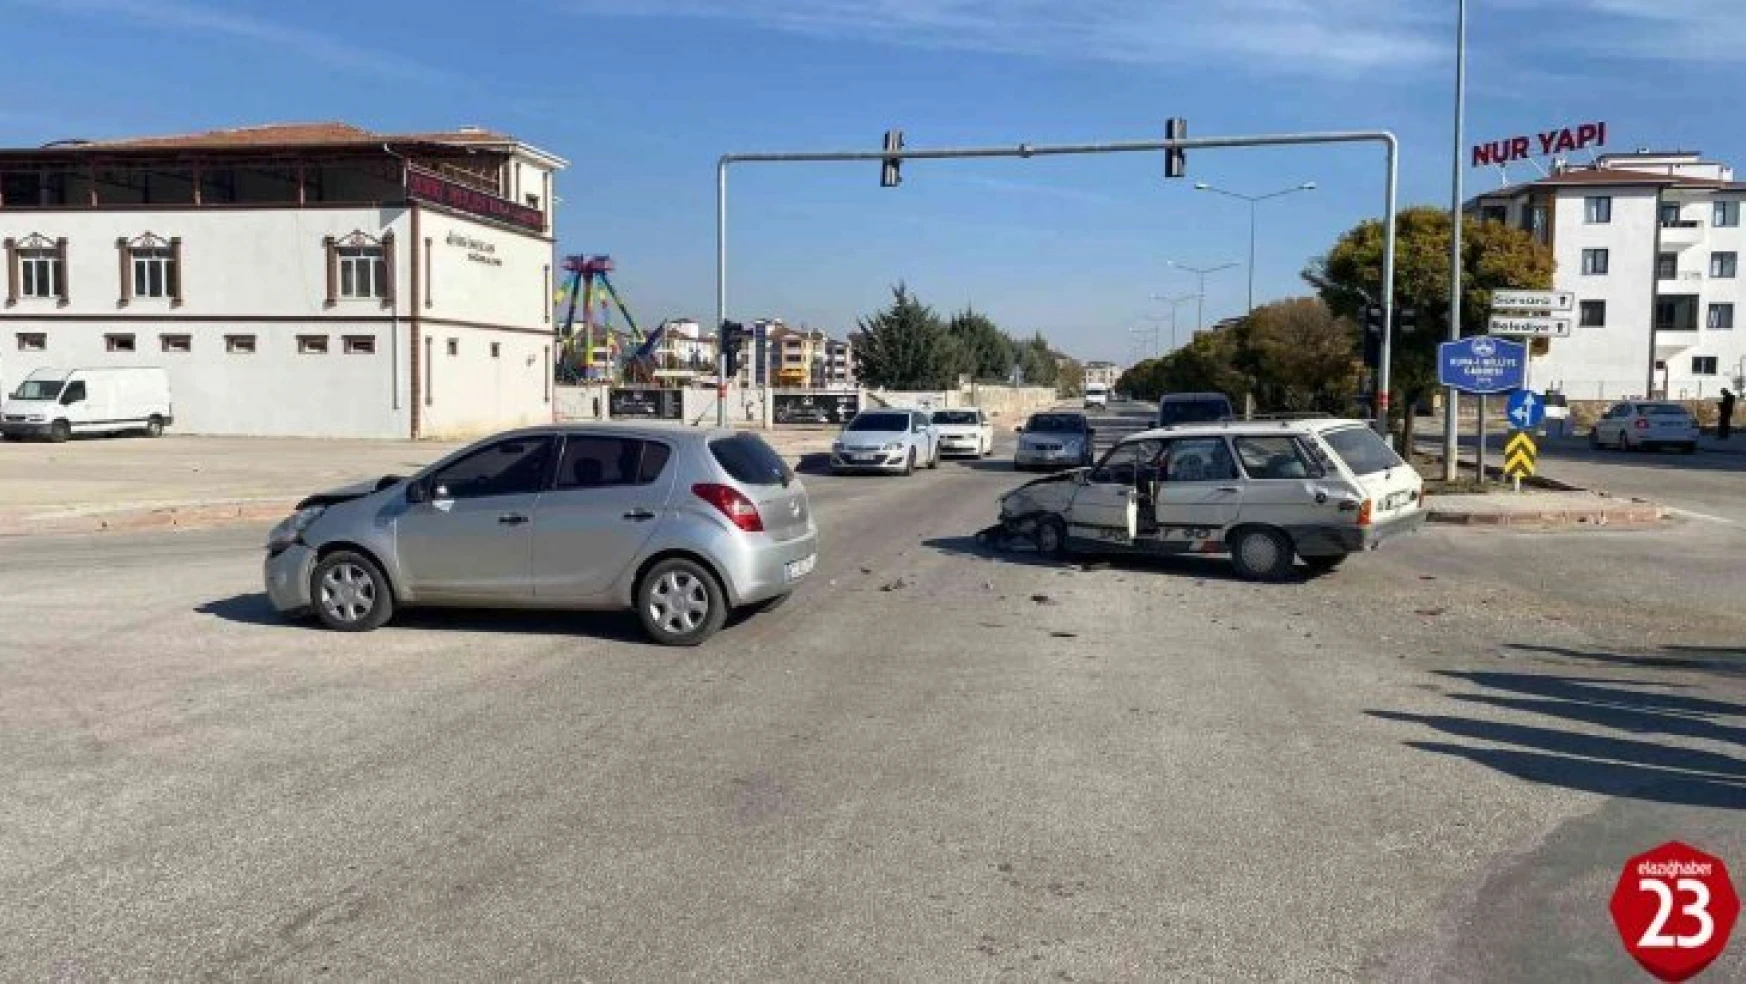 Ataşehir Mahallesinde Trafik Kazası, 2 Yaralı